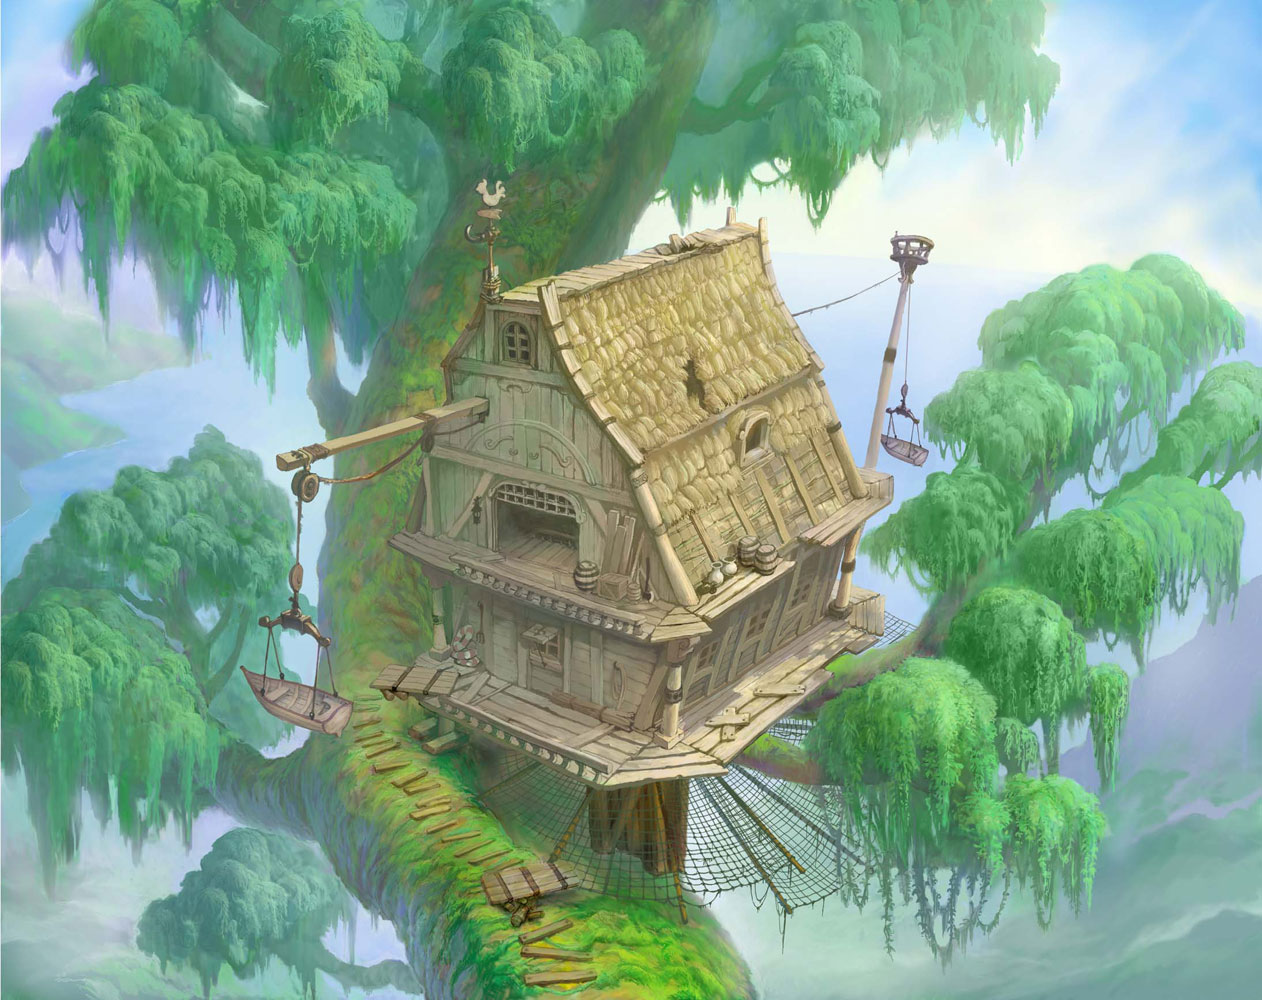 http://www.destinyislands.com/images/official-artwork/kh/worlds/kh-deep-jungle-tree-house.jpg